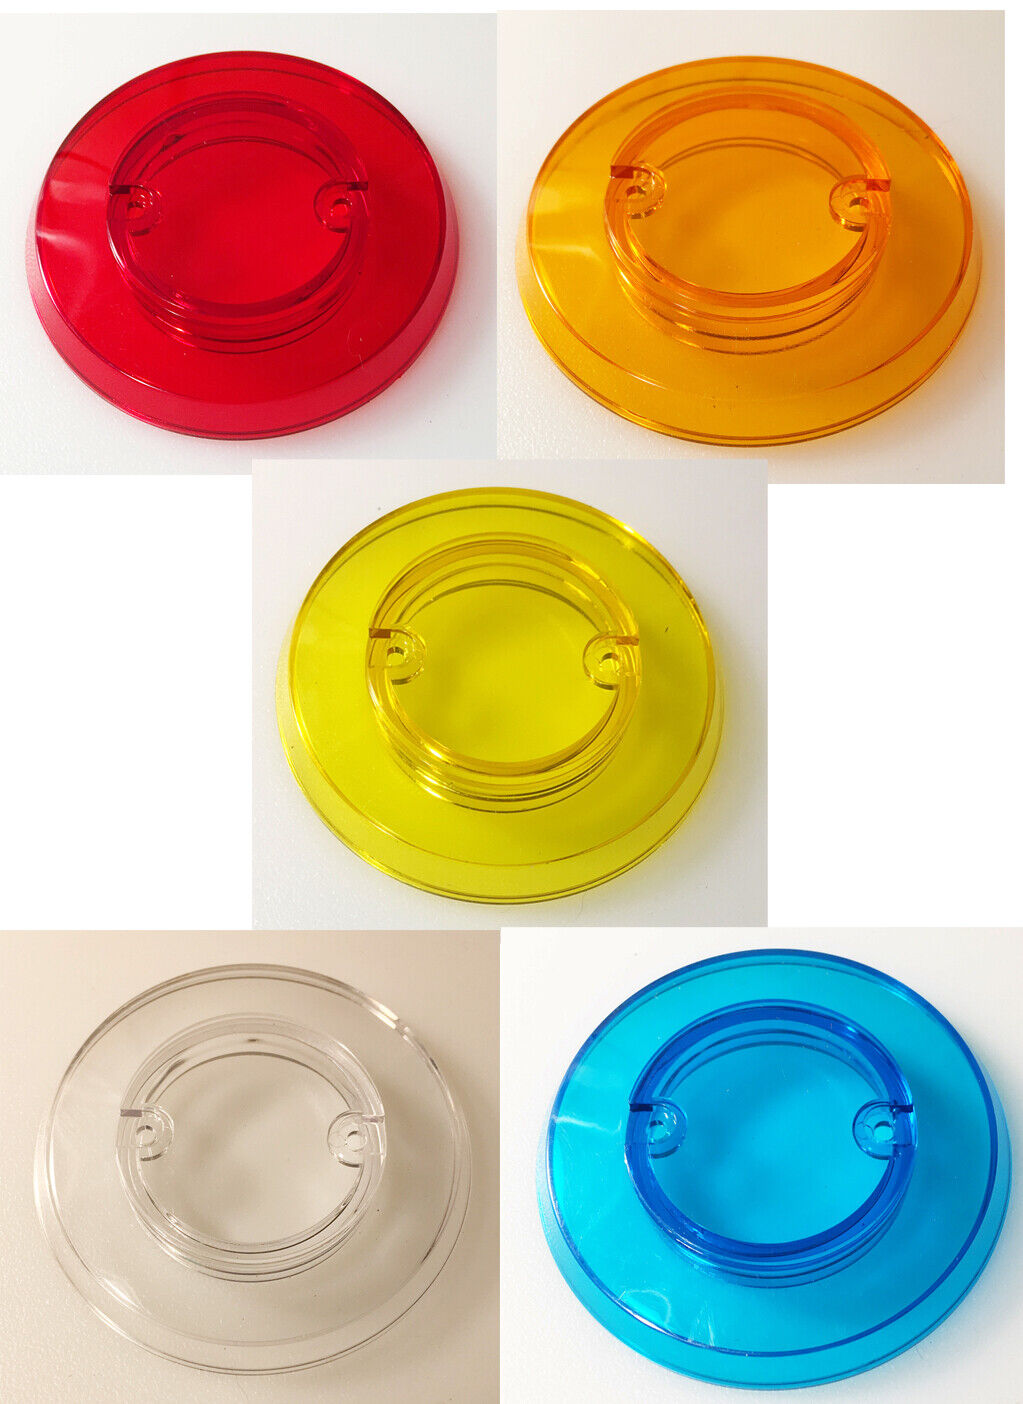 Bally - Addams Family Pinball - Pop Bumper Cap Set - All 5 Colors - NOS 